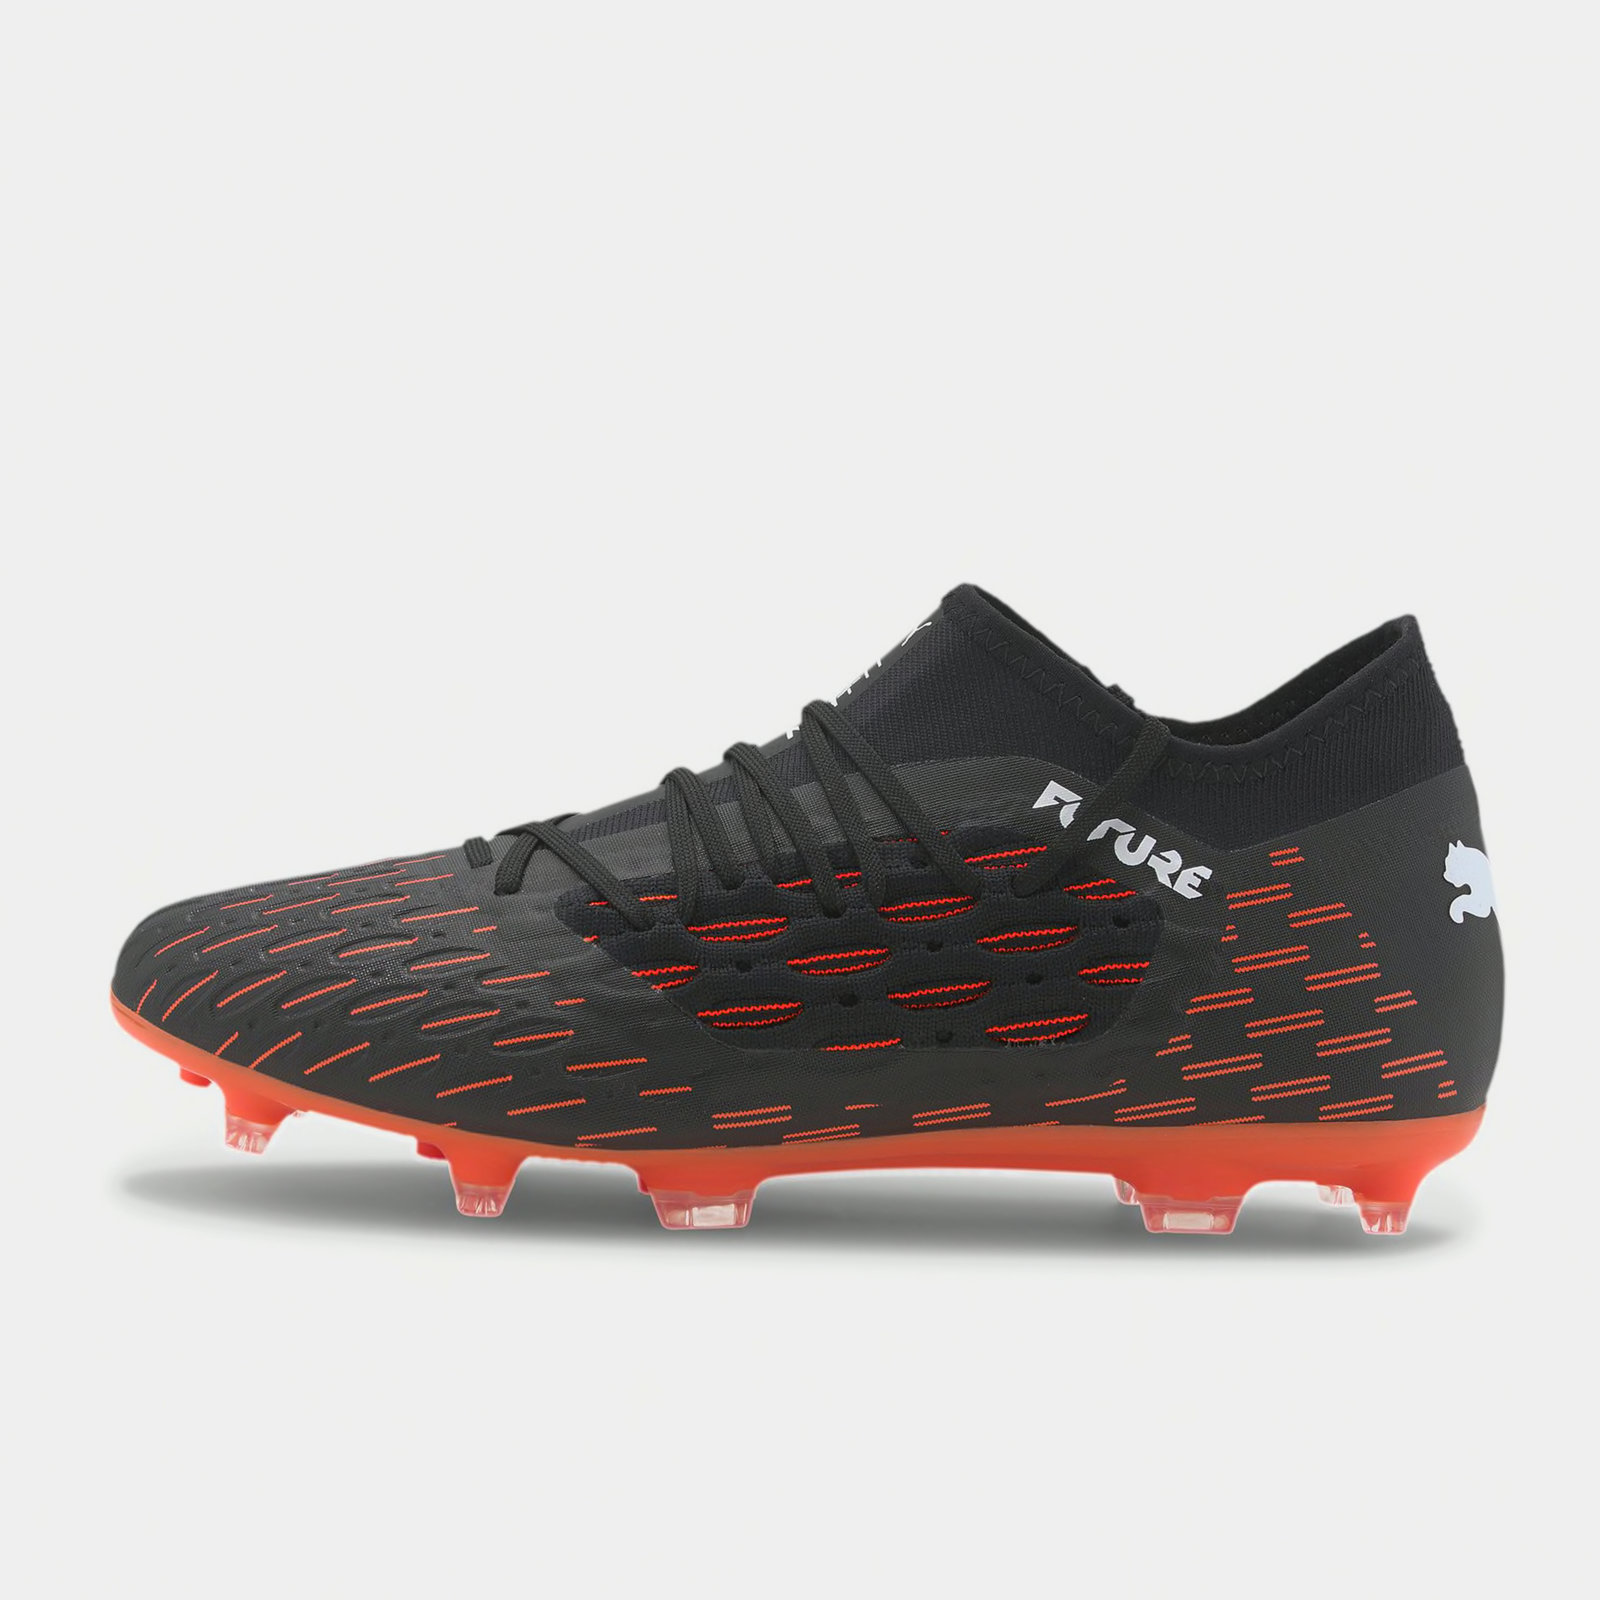 Puma Future 6.3 FG Football Boots